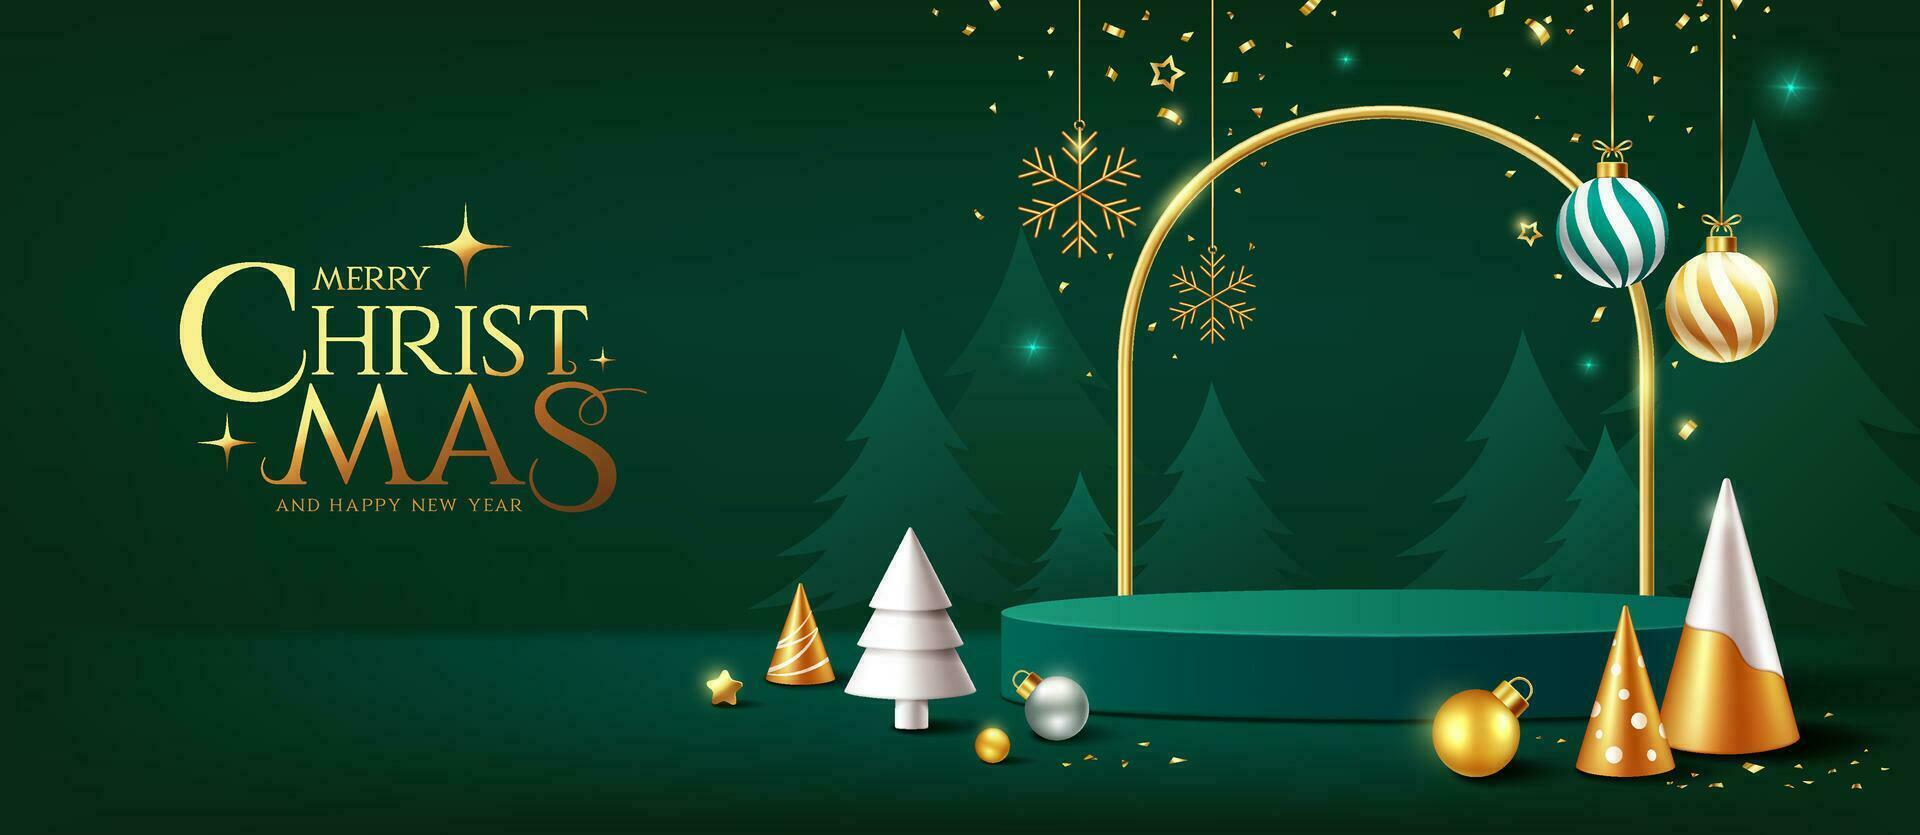 fröhlich Weihnachten und glücklich Neu Jahr, Grün Podium Anzeige Ornamente Banner Design auf Grün Hintergrund, eps10 Vektor Illustration